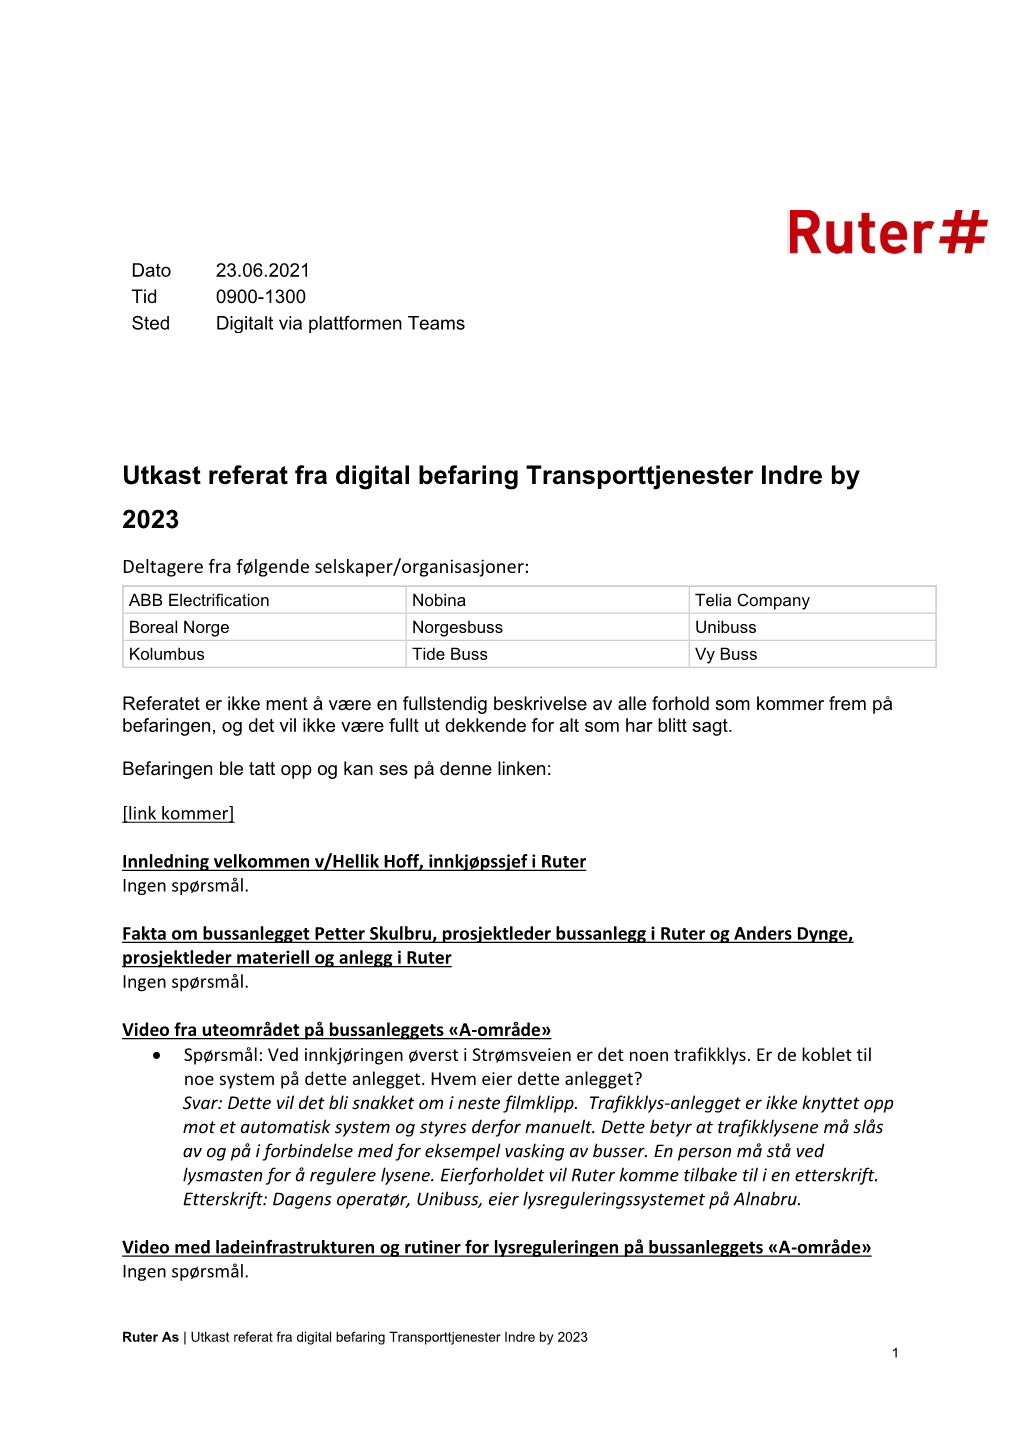 Utkast Referat Fra Digital Befaring Transporttjenester Indre by 2023